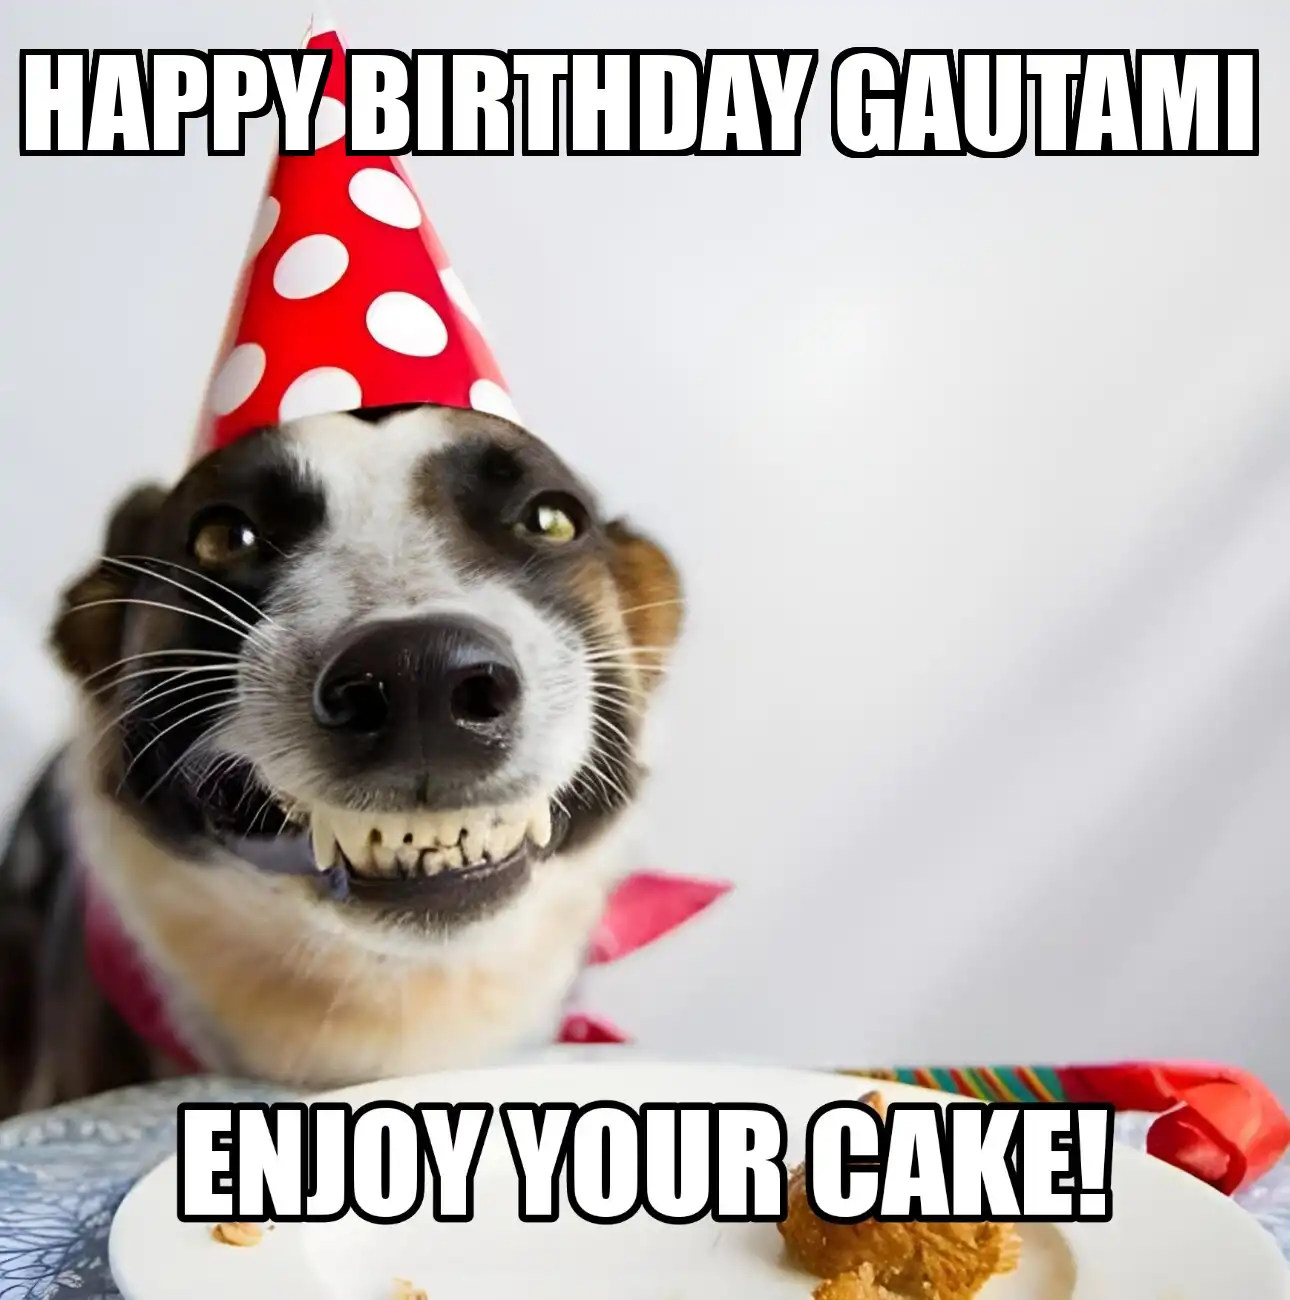 Happy Birthday Gautami Enjoy Your Cake Dog Meme